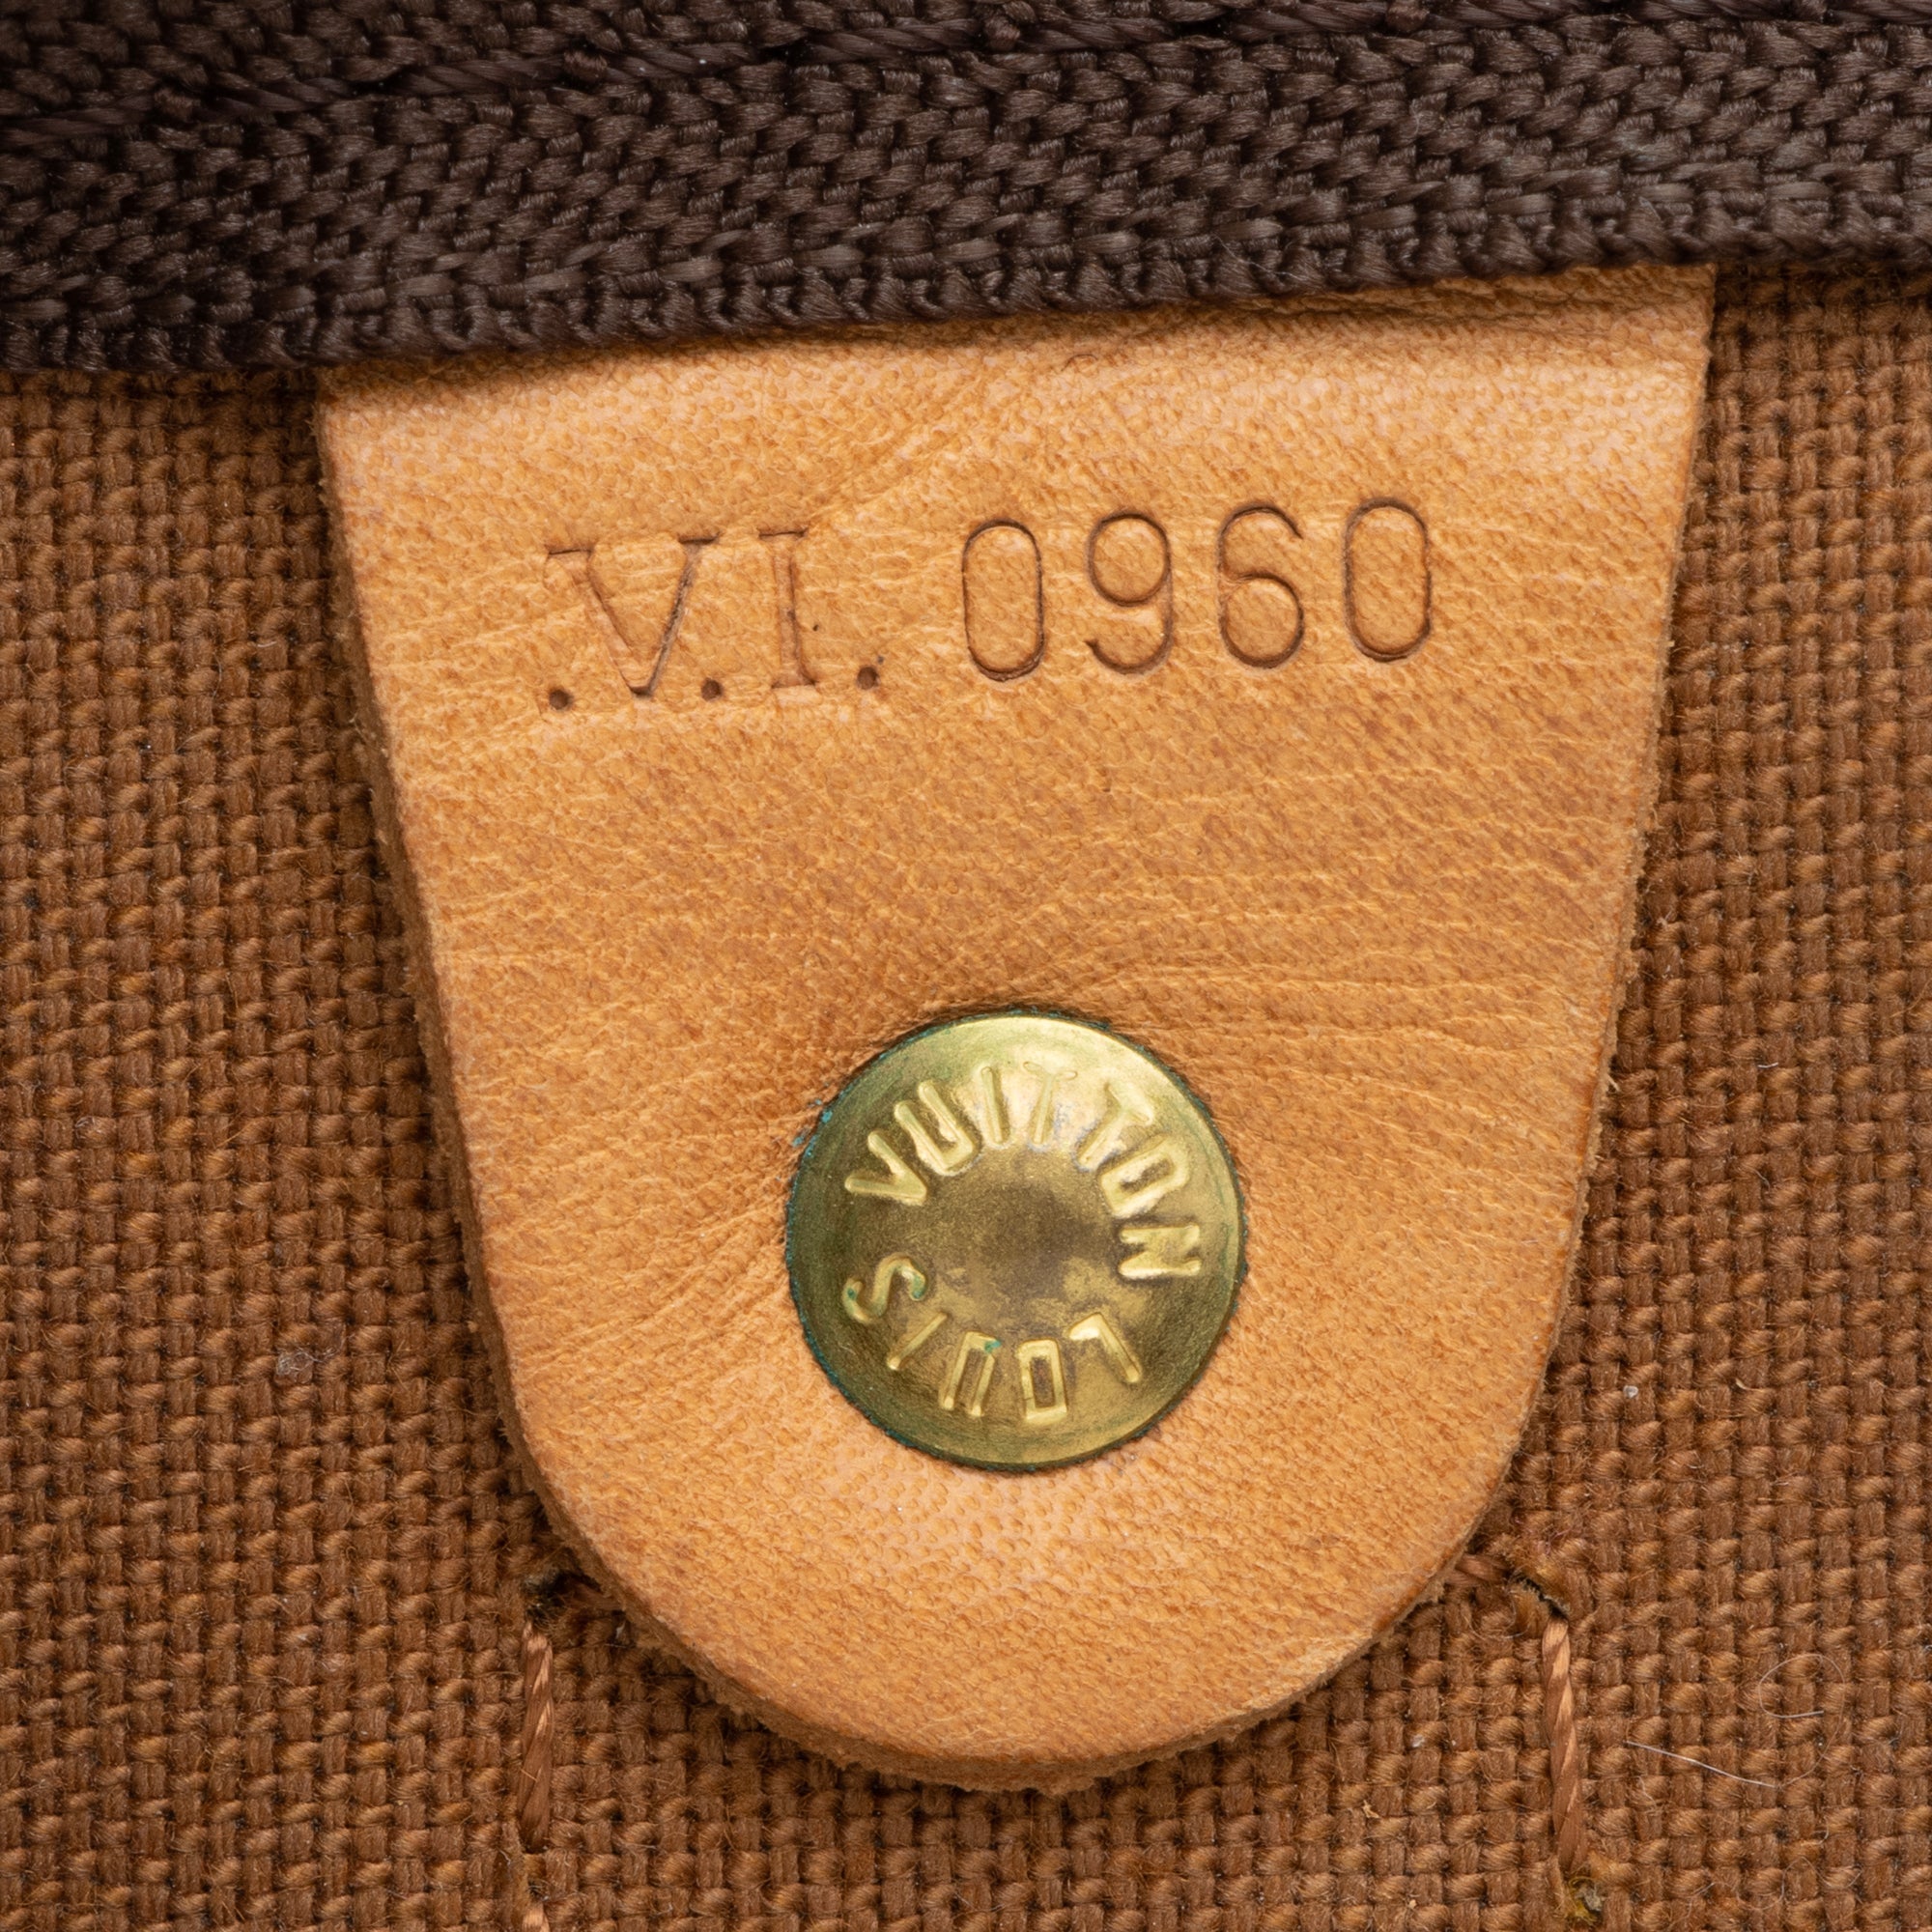 Louis Vuitton Vintage Monogram Canvas Keepall 60 Duffle Bag - FINAL SALE